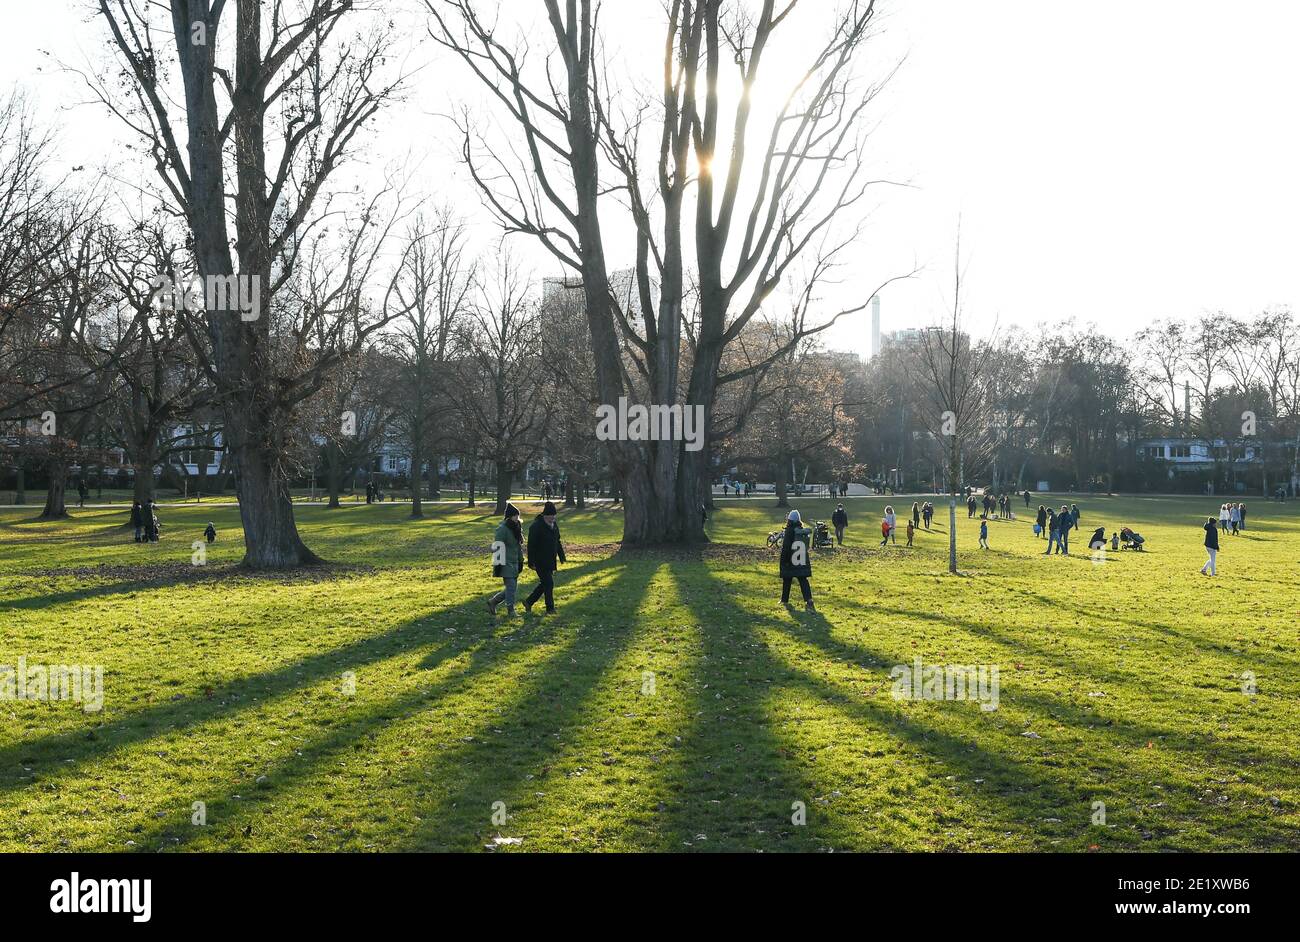 Francfort, Allemagne. 10 janvier 2021. Les gens profitent du soleil dans un parc de Francfort, en Allemagne, le 10 janvier 2021. Crédit: Lu Yang/Xinhua/Alay Live News Banque D'Images